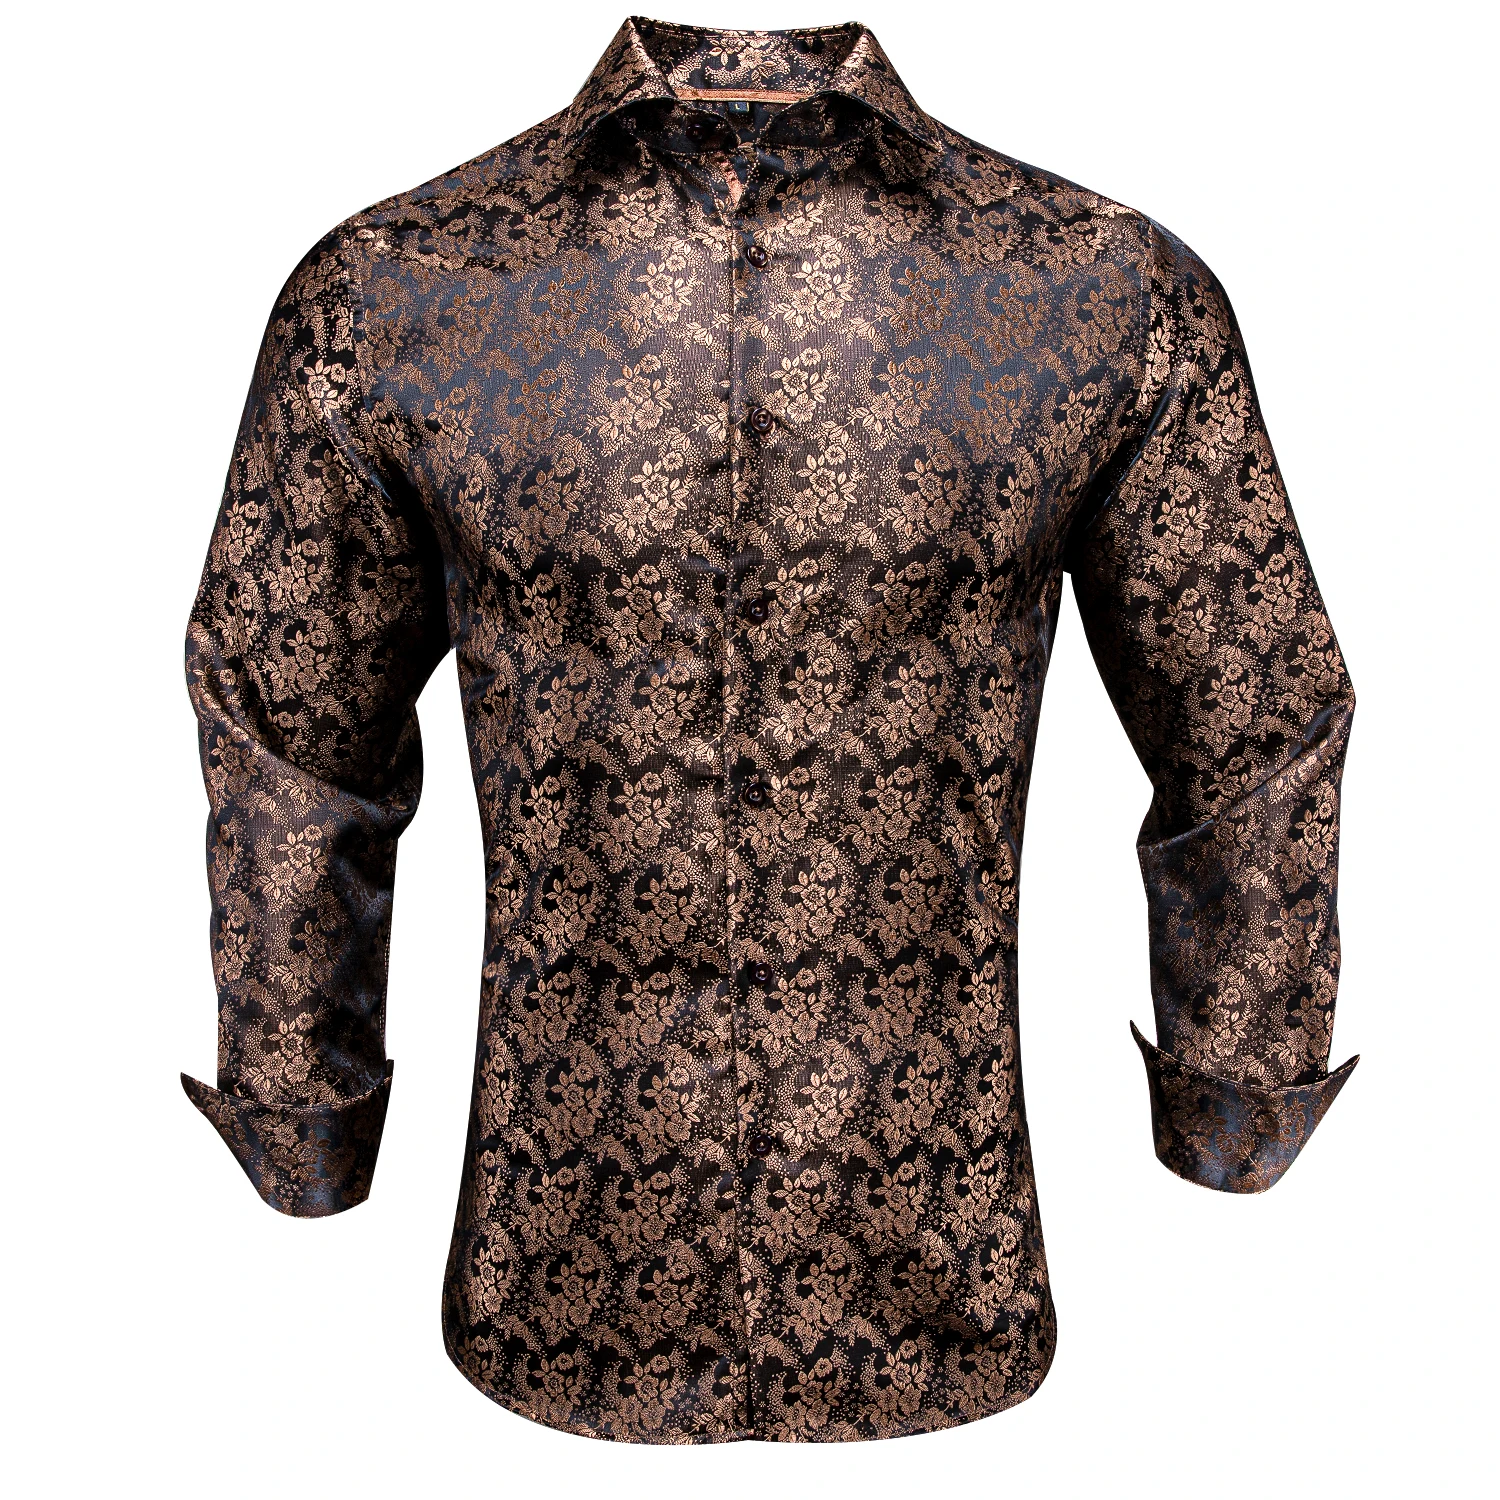 Фото Привет-Галстук коричневый цветочный Пейсли шелковая мужская рубашка новое